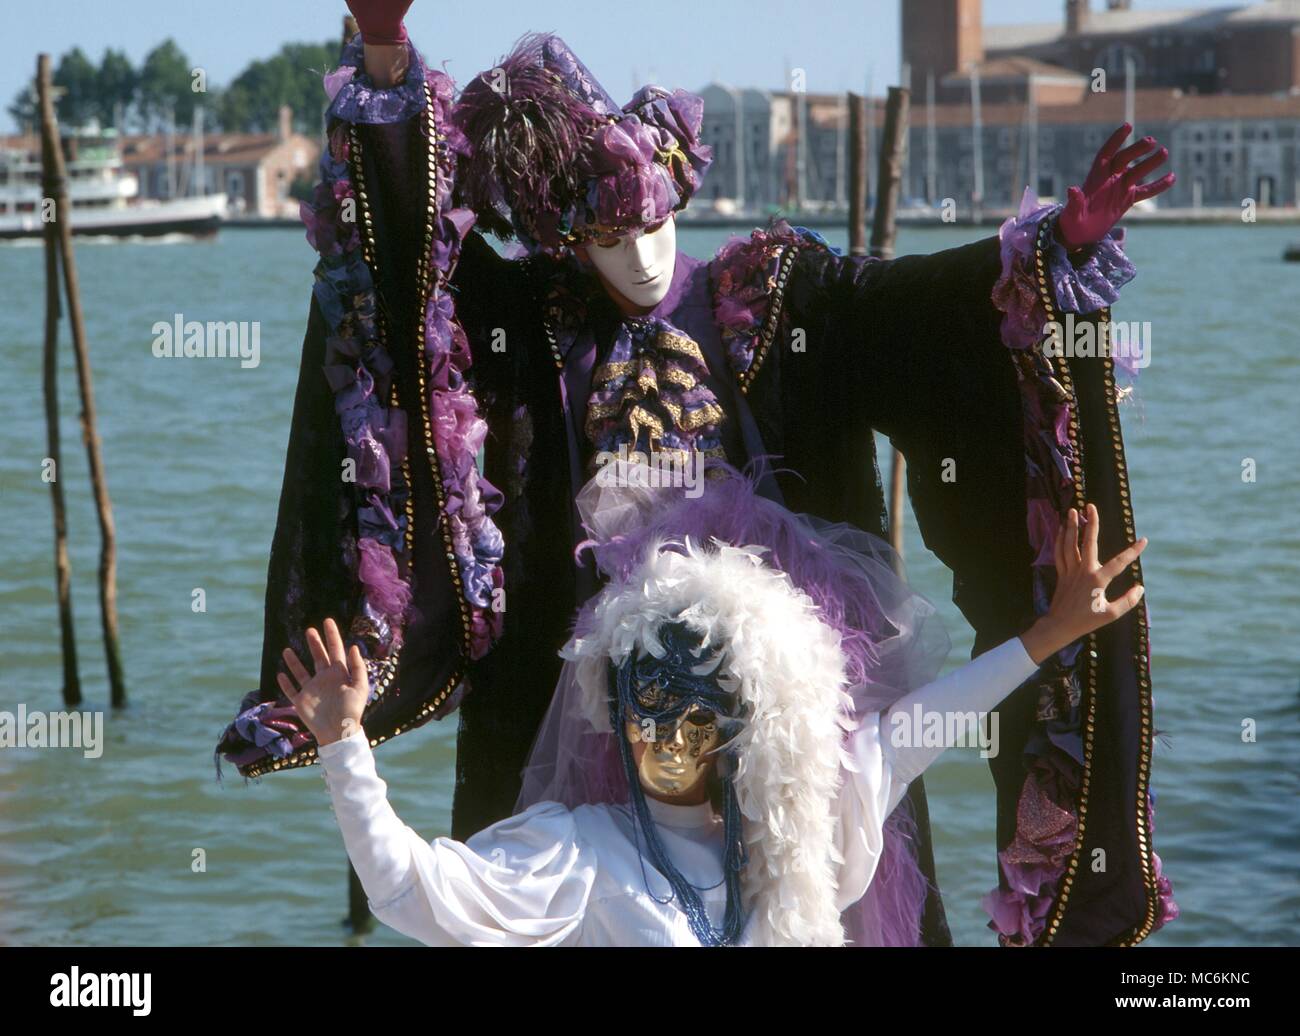 Máscaras - Carnaval de Venecia. Máscaras y disfraces de carnaval del siglo XVIII en Venecia. Foto de stock